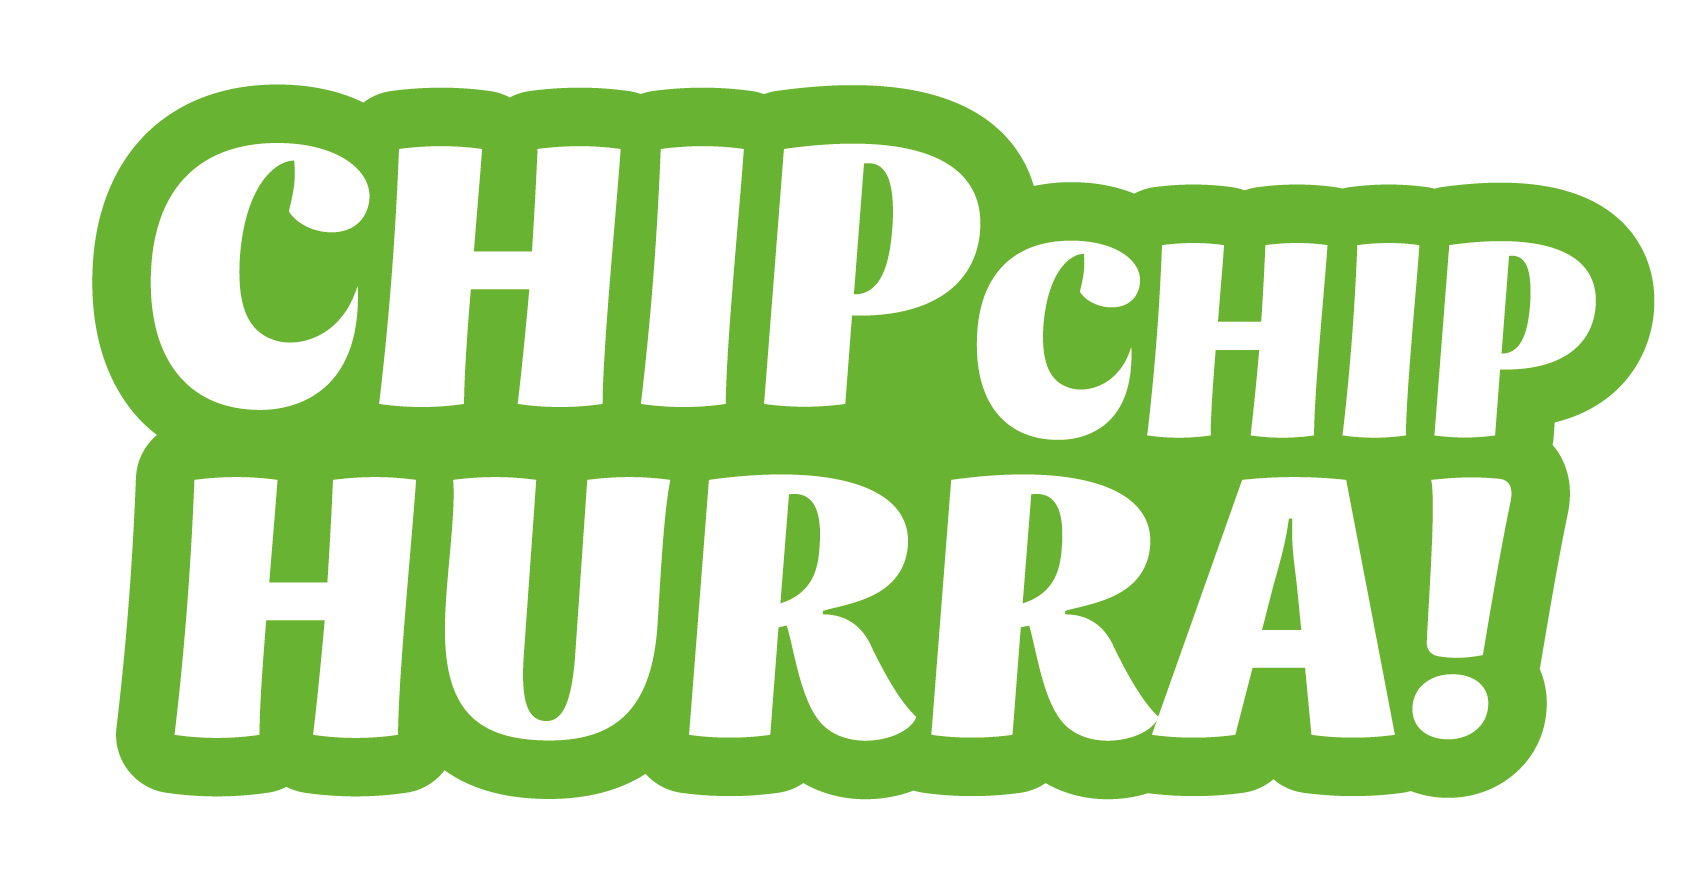 Chippen hilft jeder Katze, Chip Chip Hurra, Petition, Aktiver Tierschutz Austria, Arche Noah, Gefunden und doch verloren